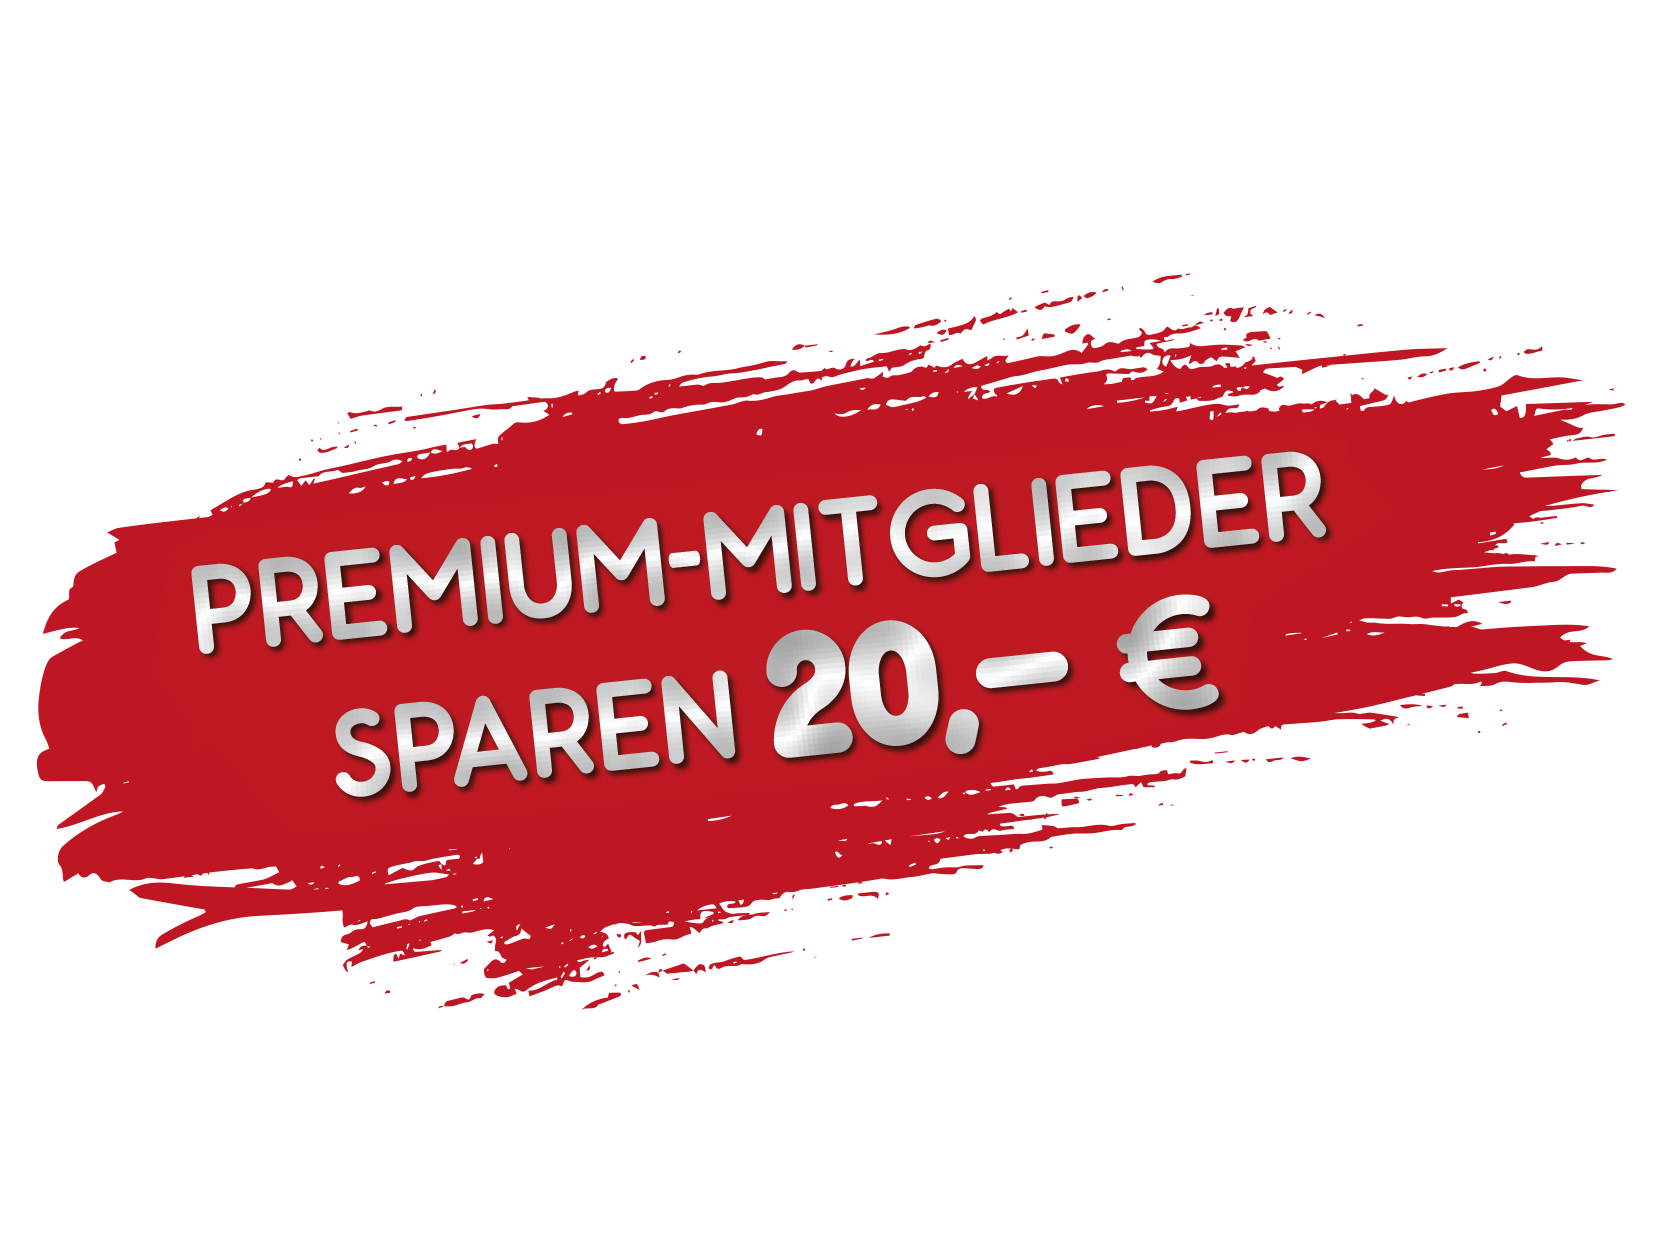 Premiummitglieder sparen 20,- €